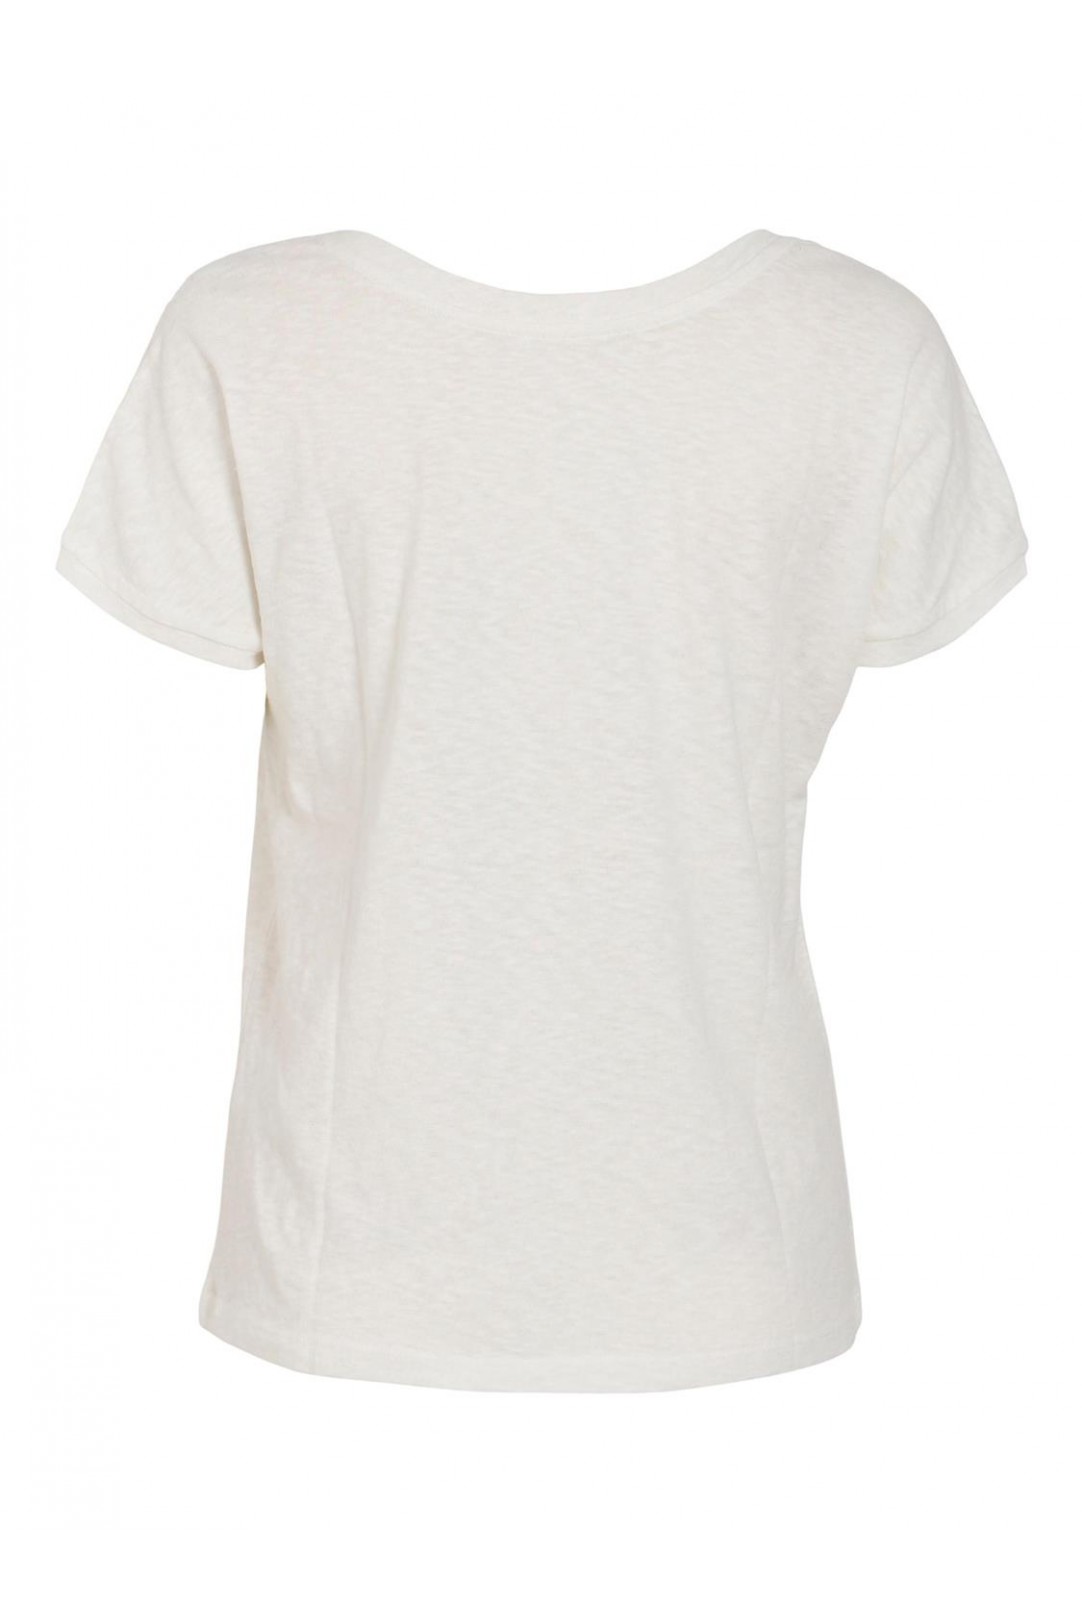 Camiseta básica Pury con escote en V en color blanco. Modelo 1409157 de Vila.